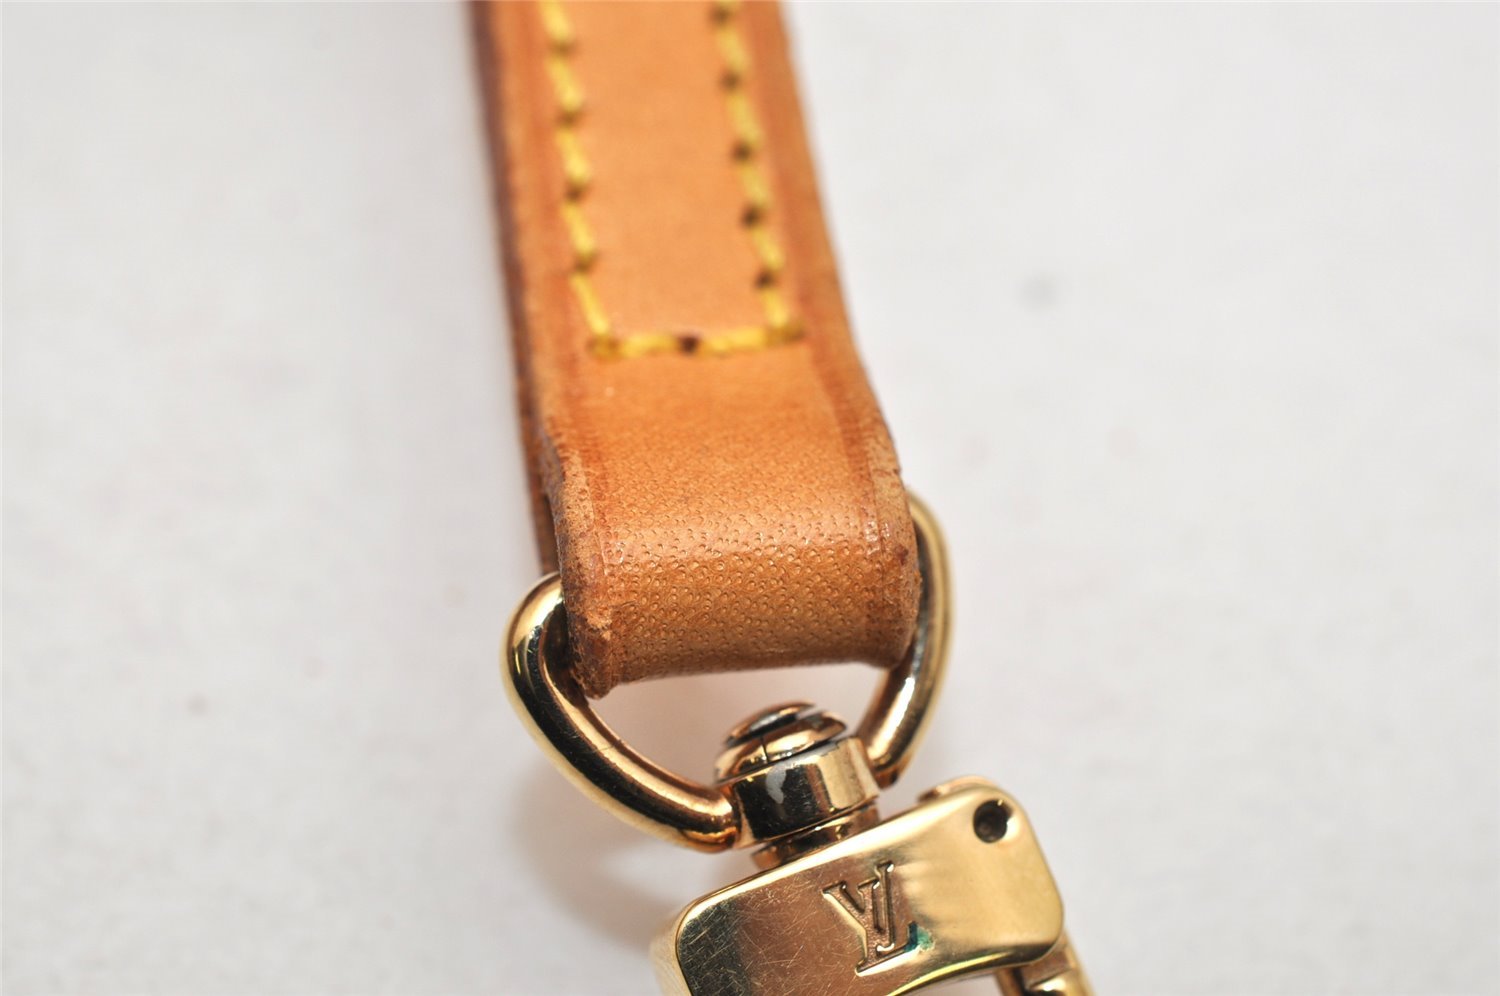 Authentic Louis Vuitton Leather Shoulder Strap Beige 47.6